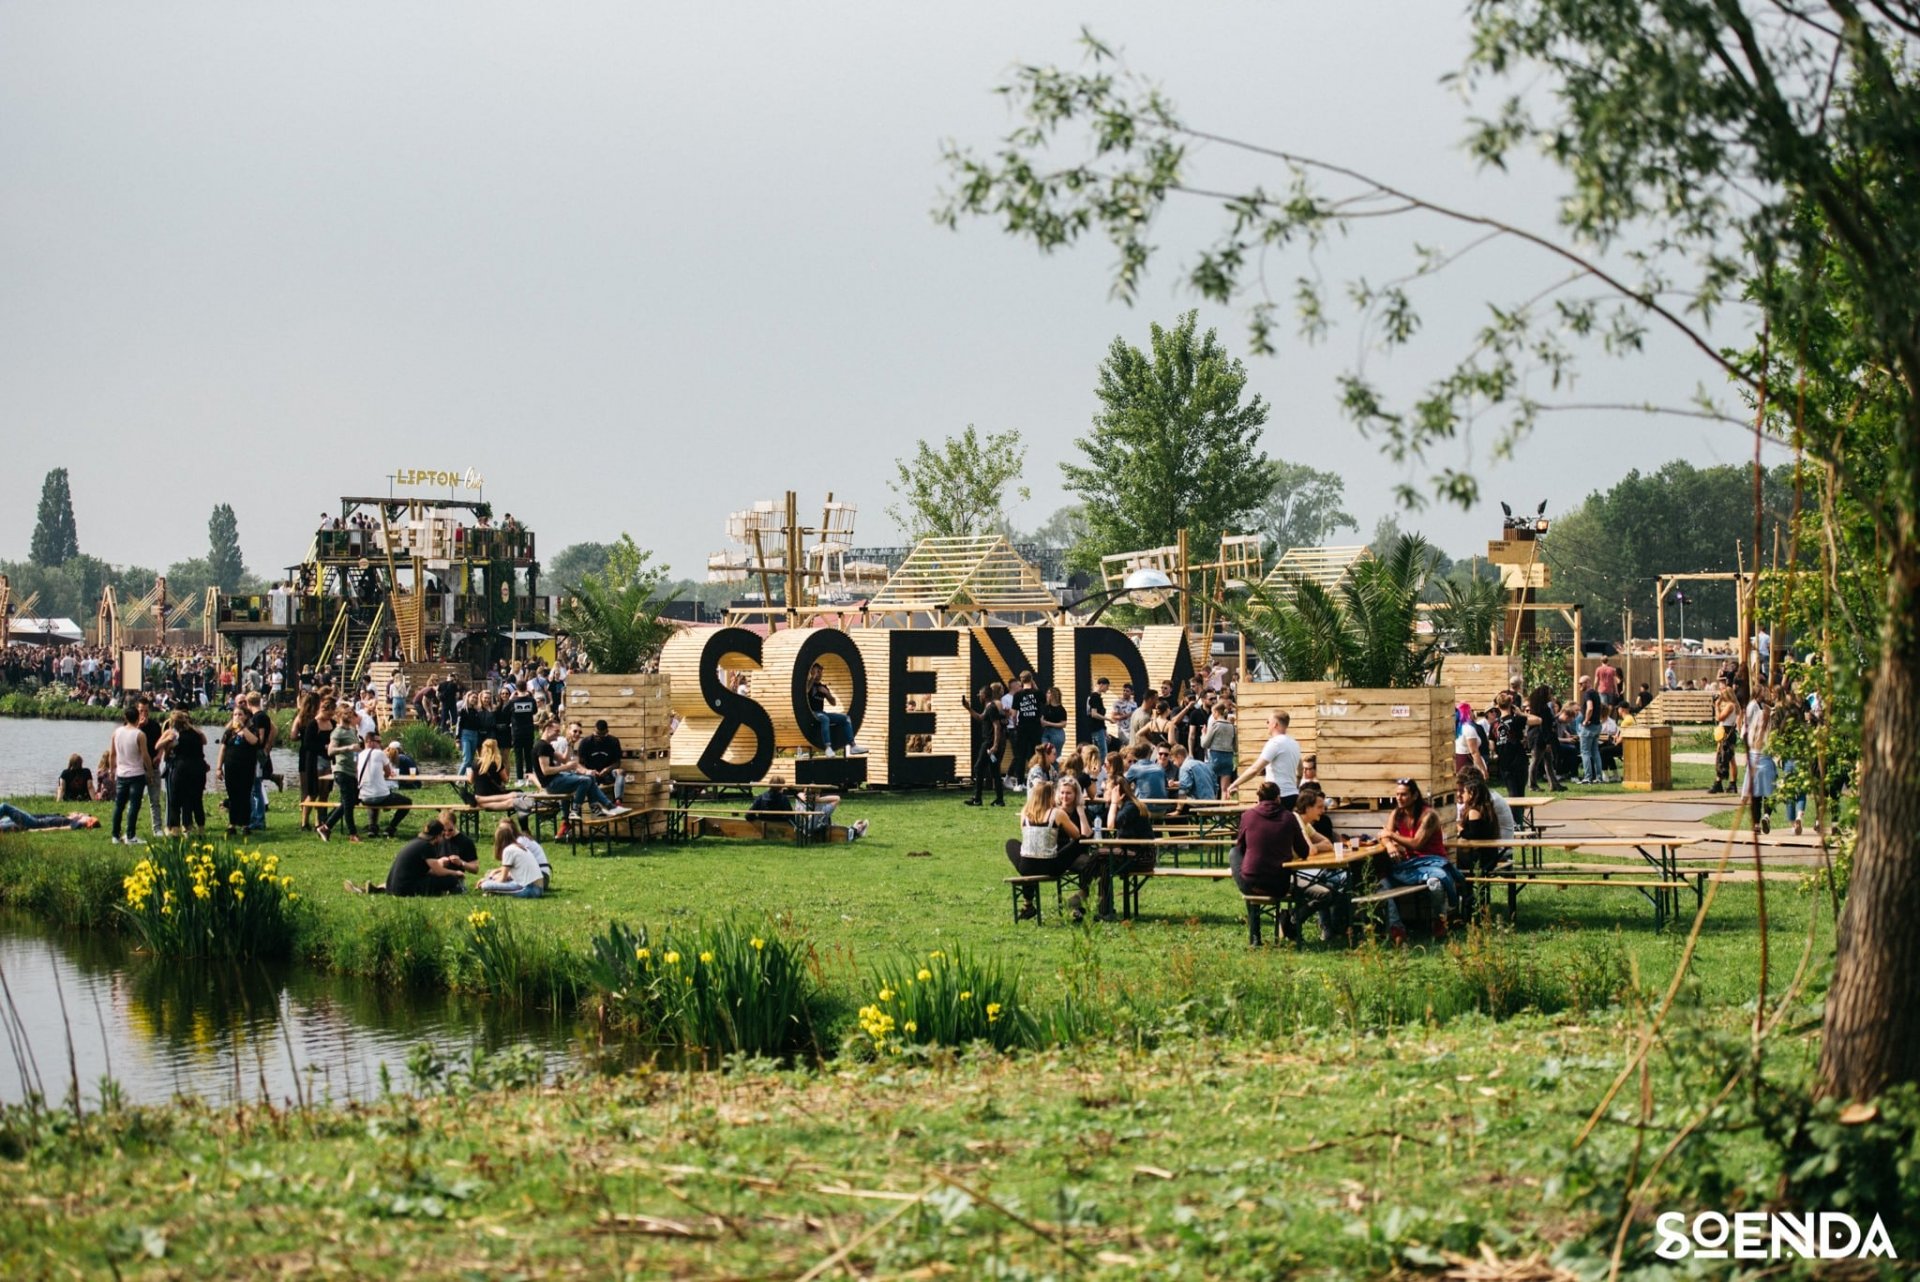 Bezoekers aan Soenda Festival in Noorderpark Ruigenhoek met heel groot de houten letters 'SOENDA' in het gras